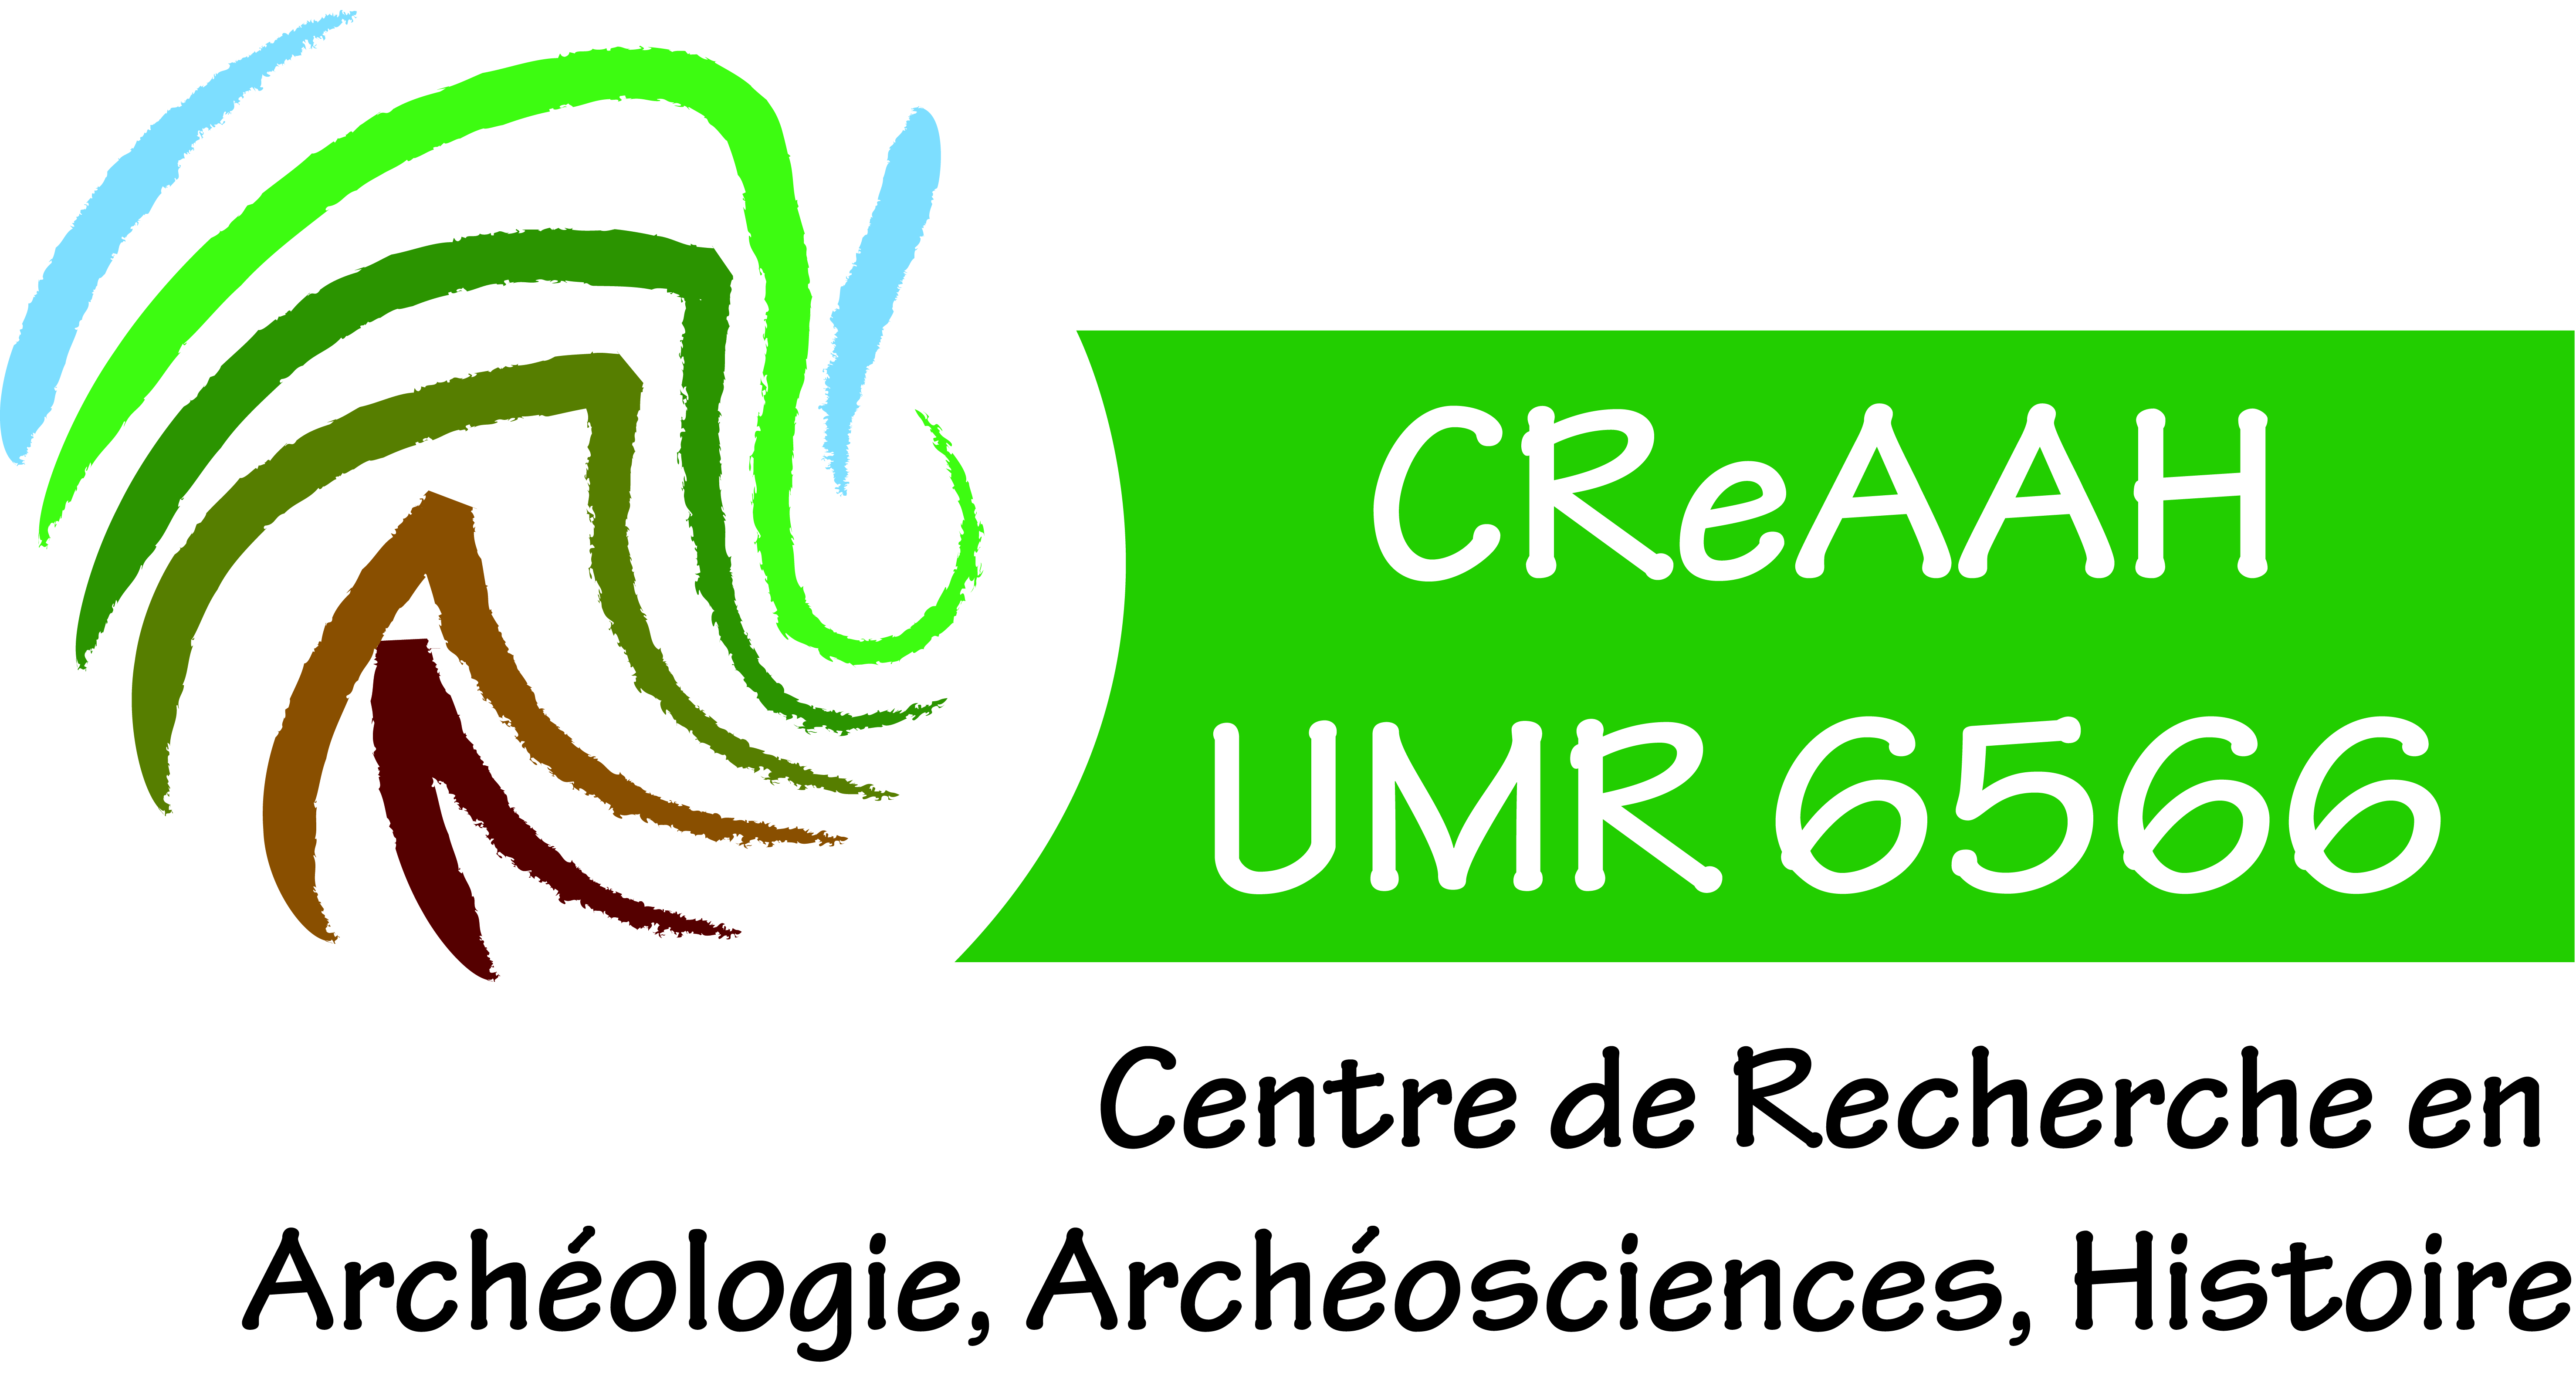 UMR 6566 - CReAAH